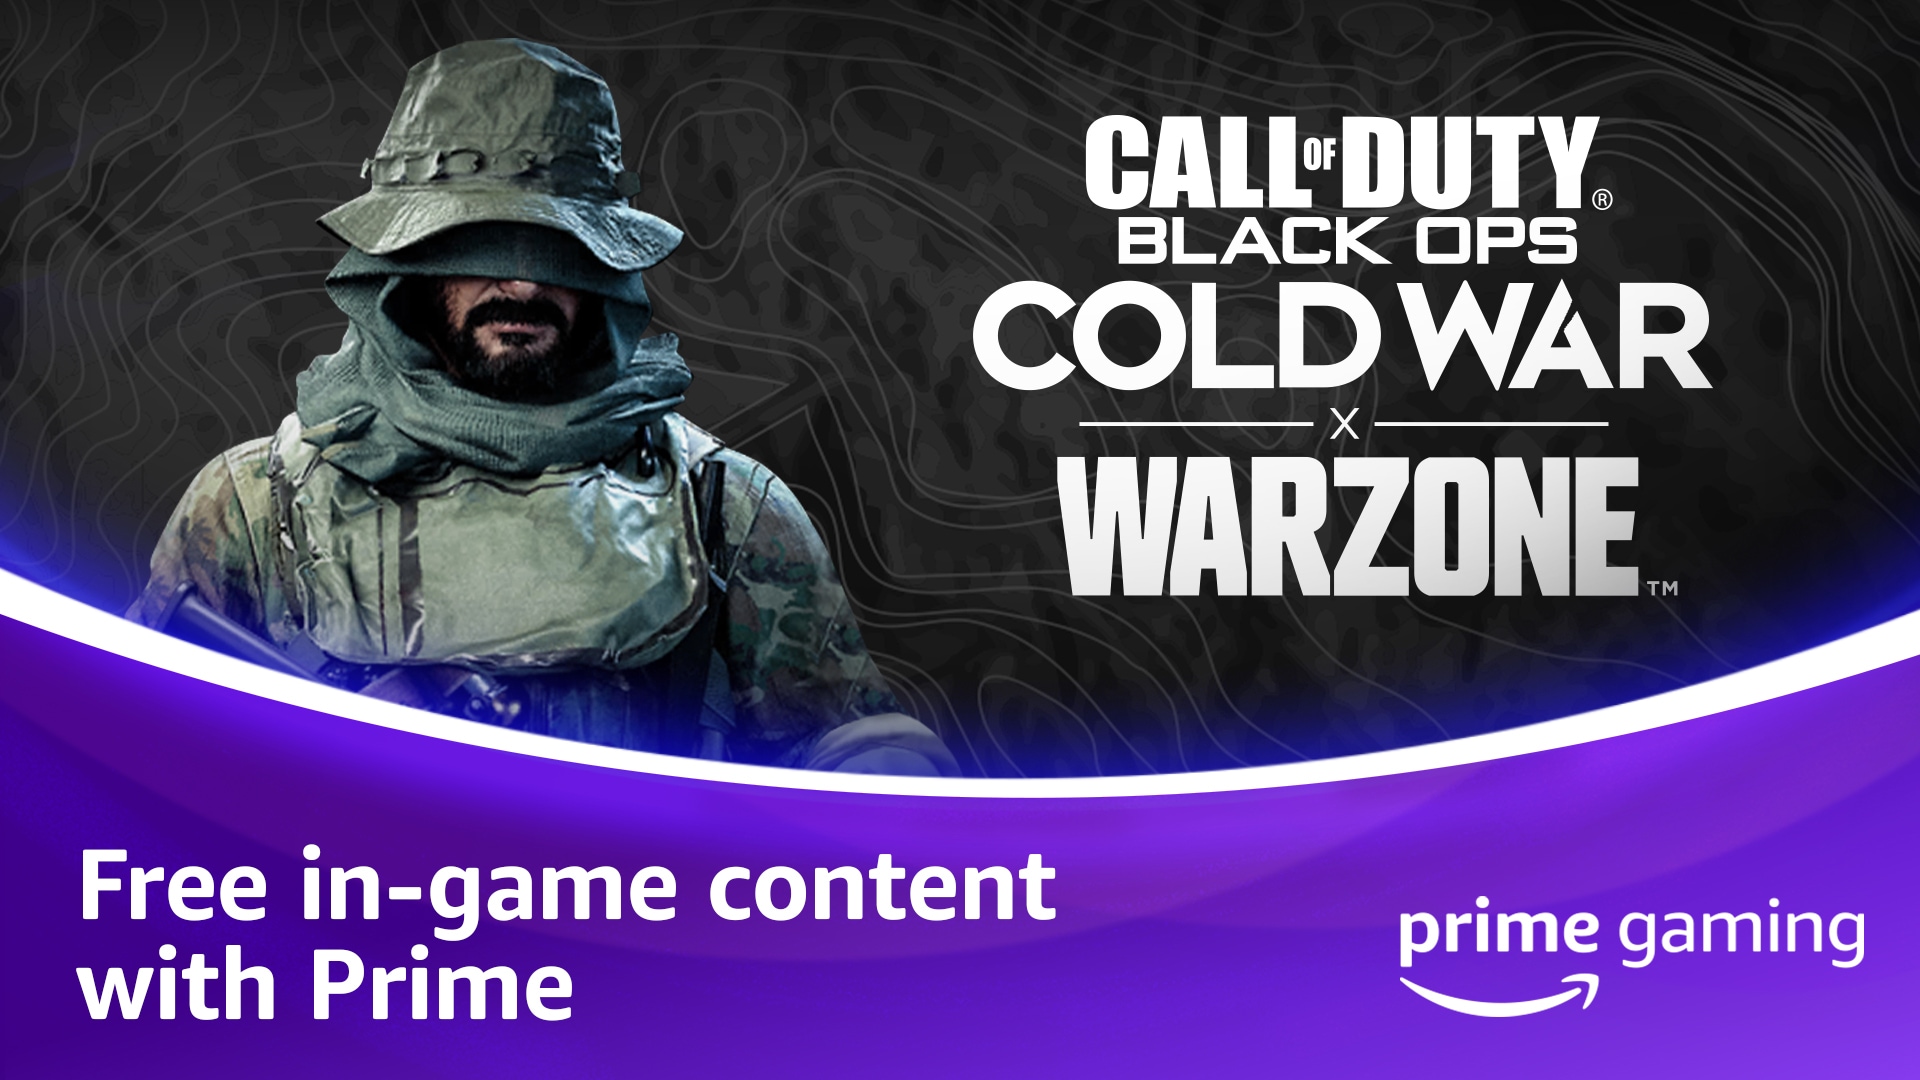 Arrivano le ricompense Prime Gaming per Call of Duty®: Black Ops Cold War, Warzone™ e Mobile per i membri Prime